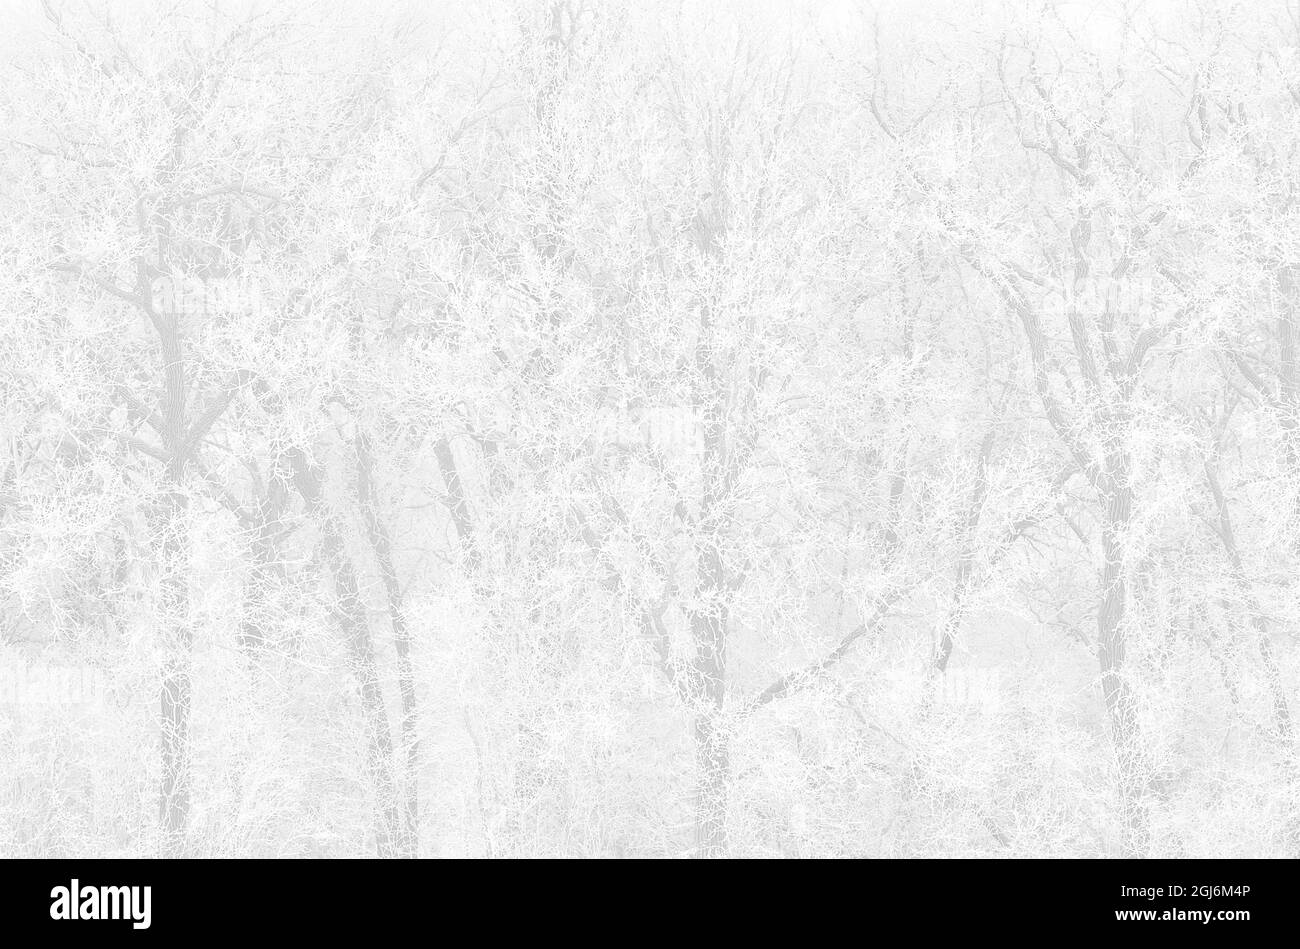 Kanada, Manitoba, La Barriere Provincial Park. Schneefall auf Bäumen, die mit Reif bedeckt sind. Kredit als: Mike Grandmaison / Jaynes Gallery / DanitaDelimont Stockfoto